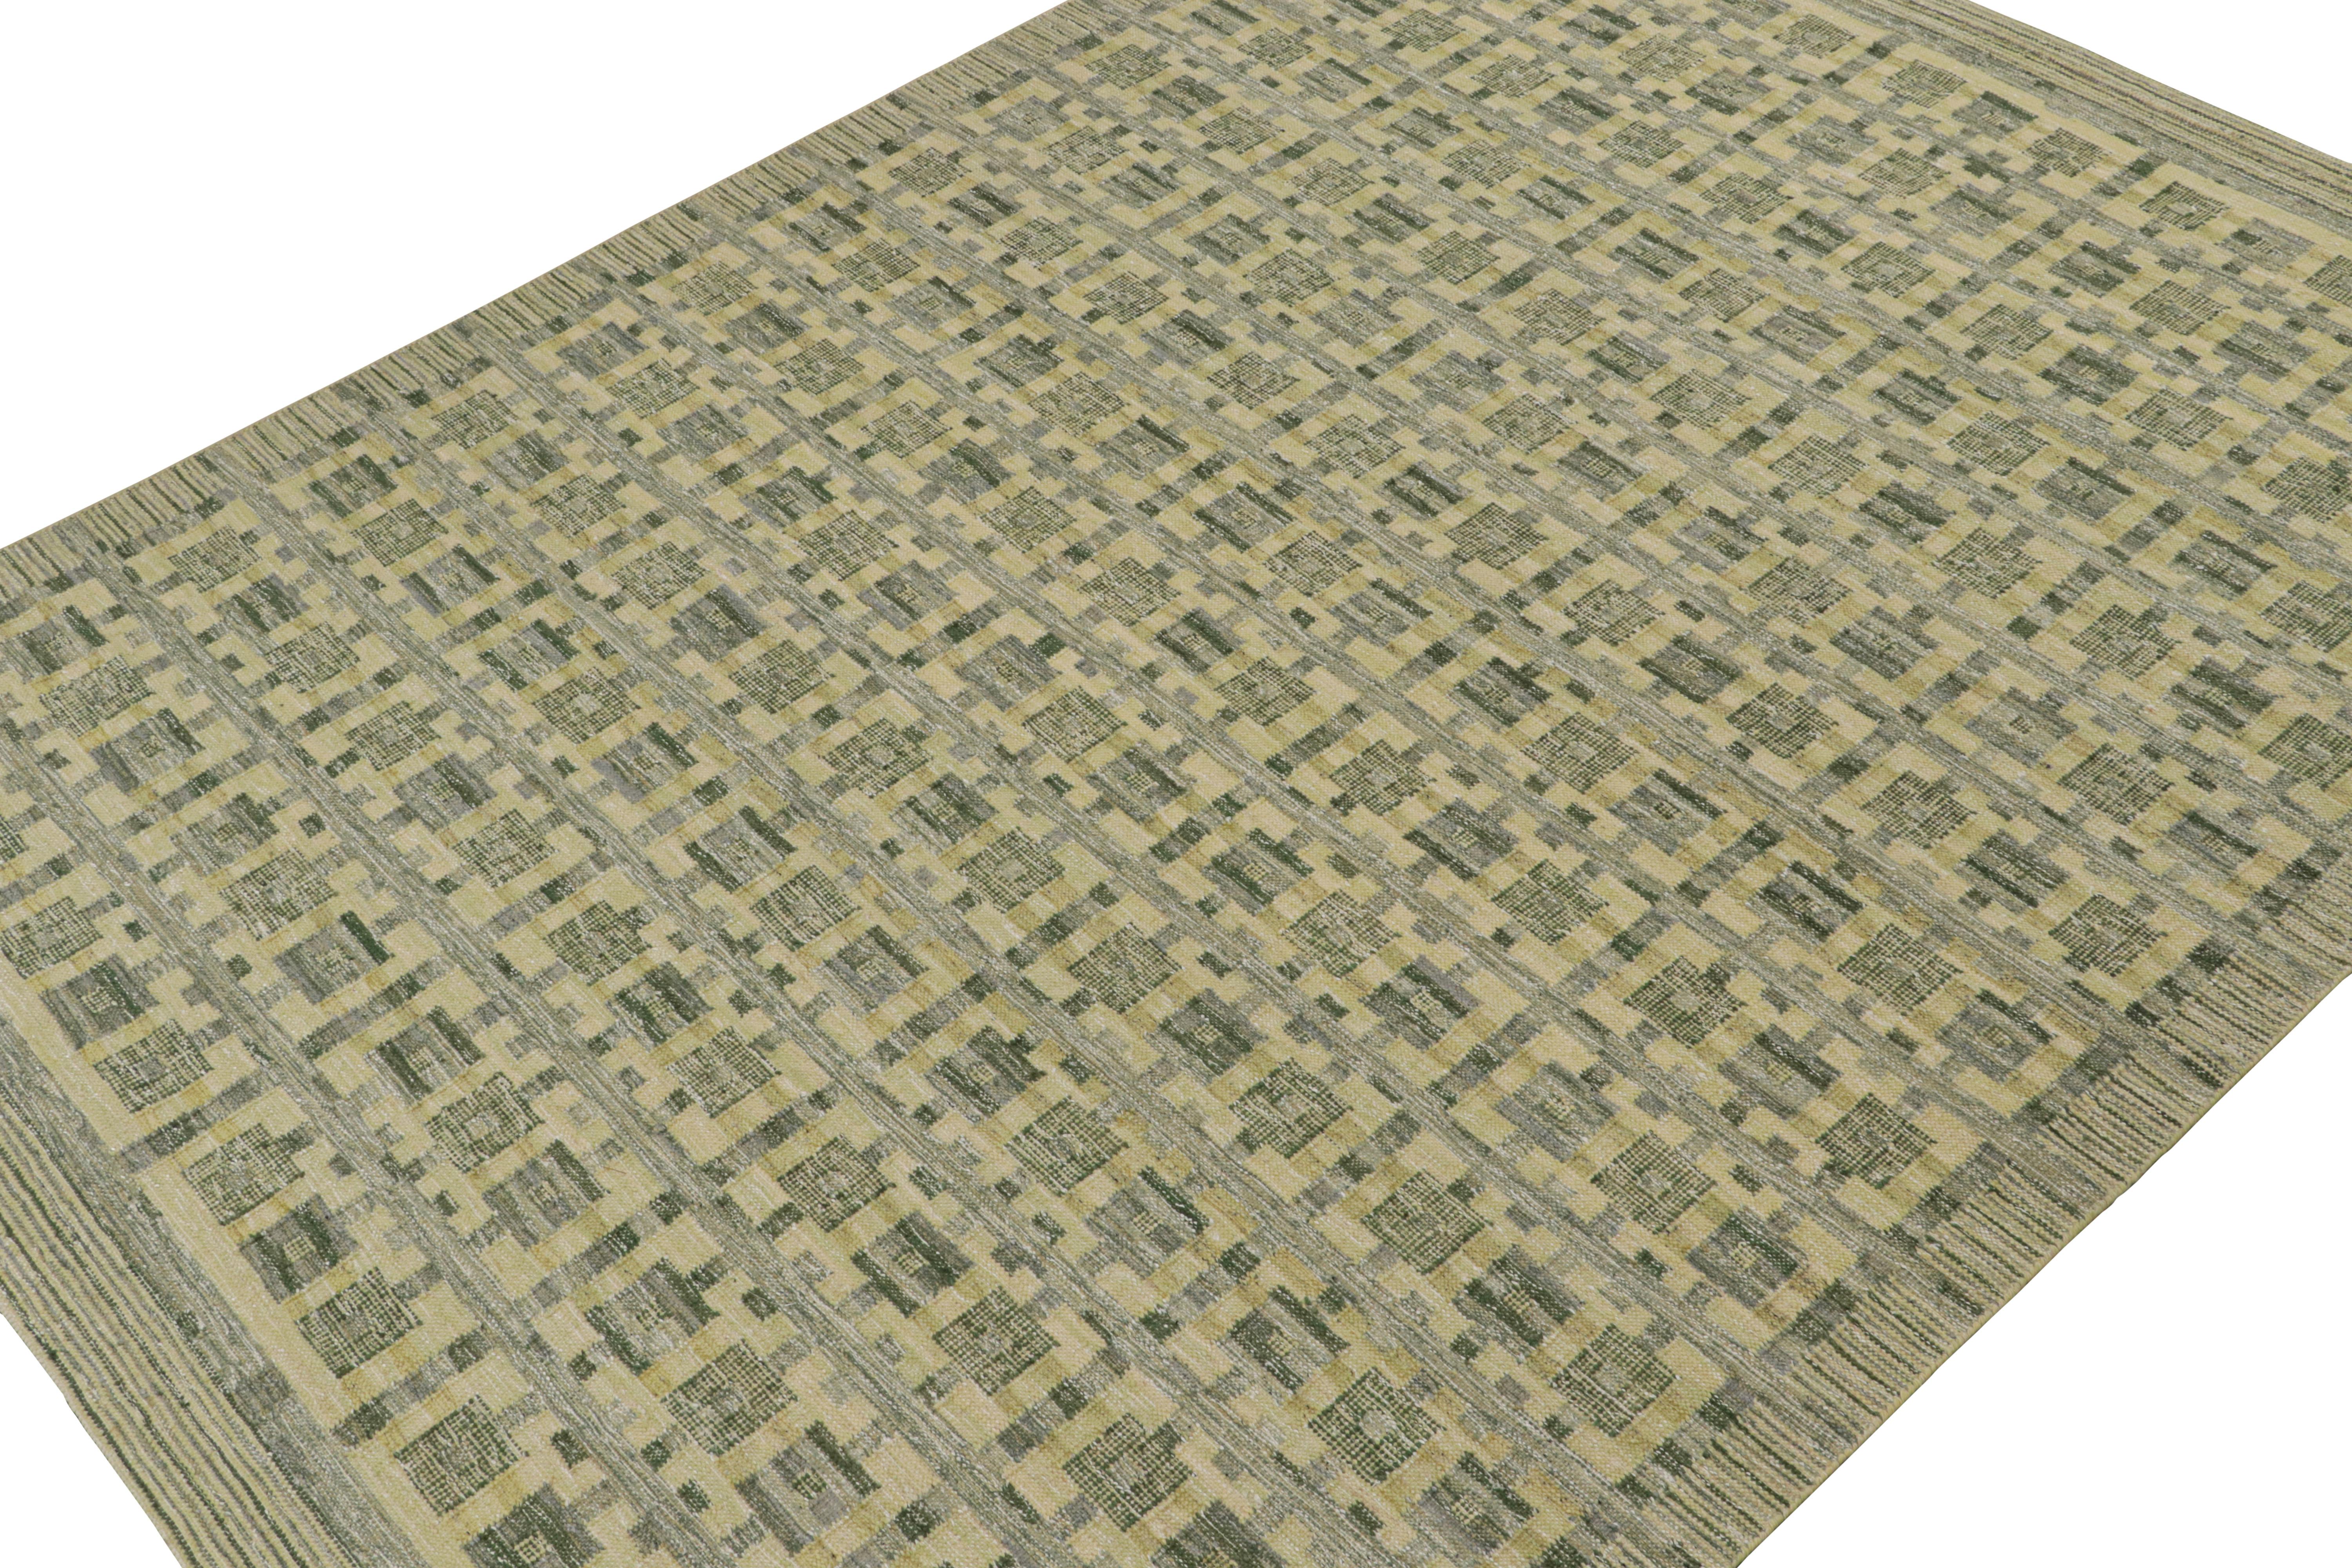 Ce tapis Kilim 9x12 est issu de la ligne flatweave de la collection de tapis scandinaves de Rug & Kilim. Tissé à la main en laine, coton et fils naturels, son design est une reprise moderne des tapis Rollakhan et Rya dans le style déco suédois.